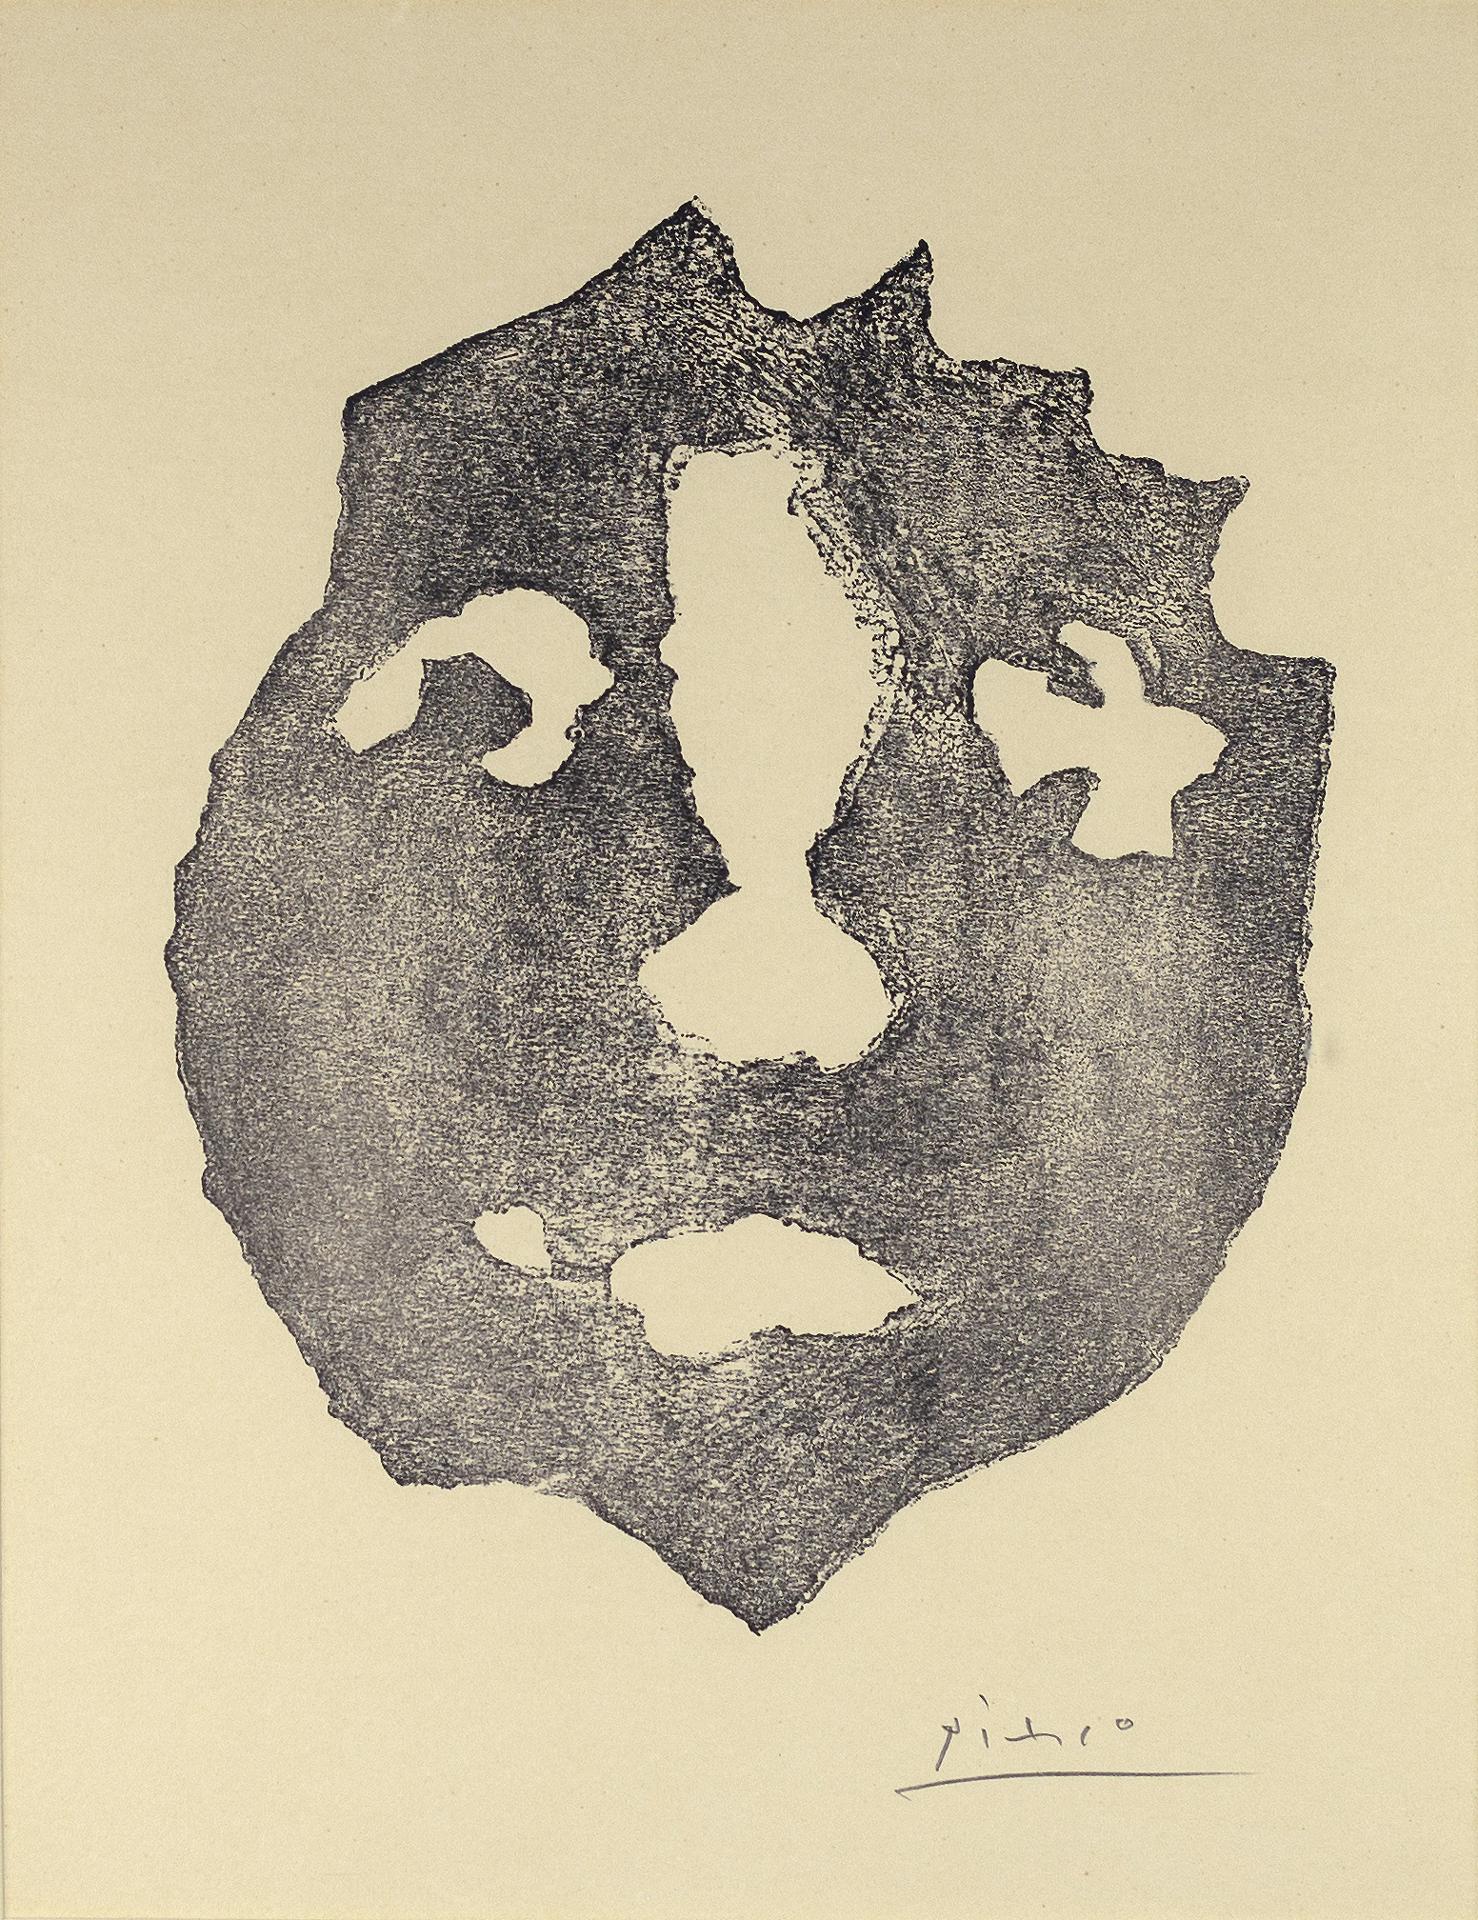 Pablo Ruiz Picasso (1881-1973) - Grotesque (René Mazon) (planche du livre de poésie Les transparents par René Char), 1967